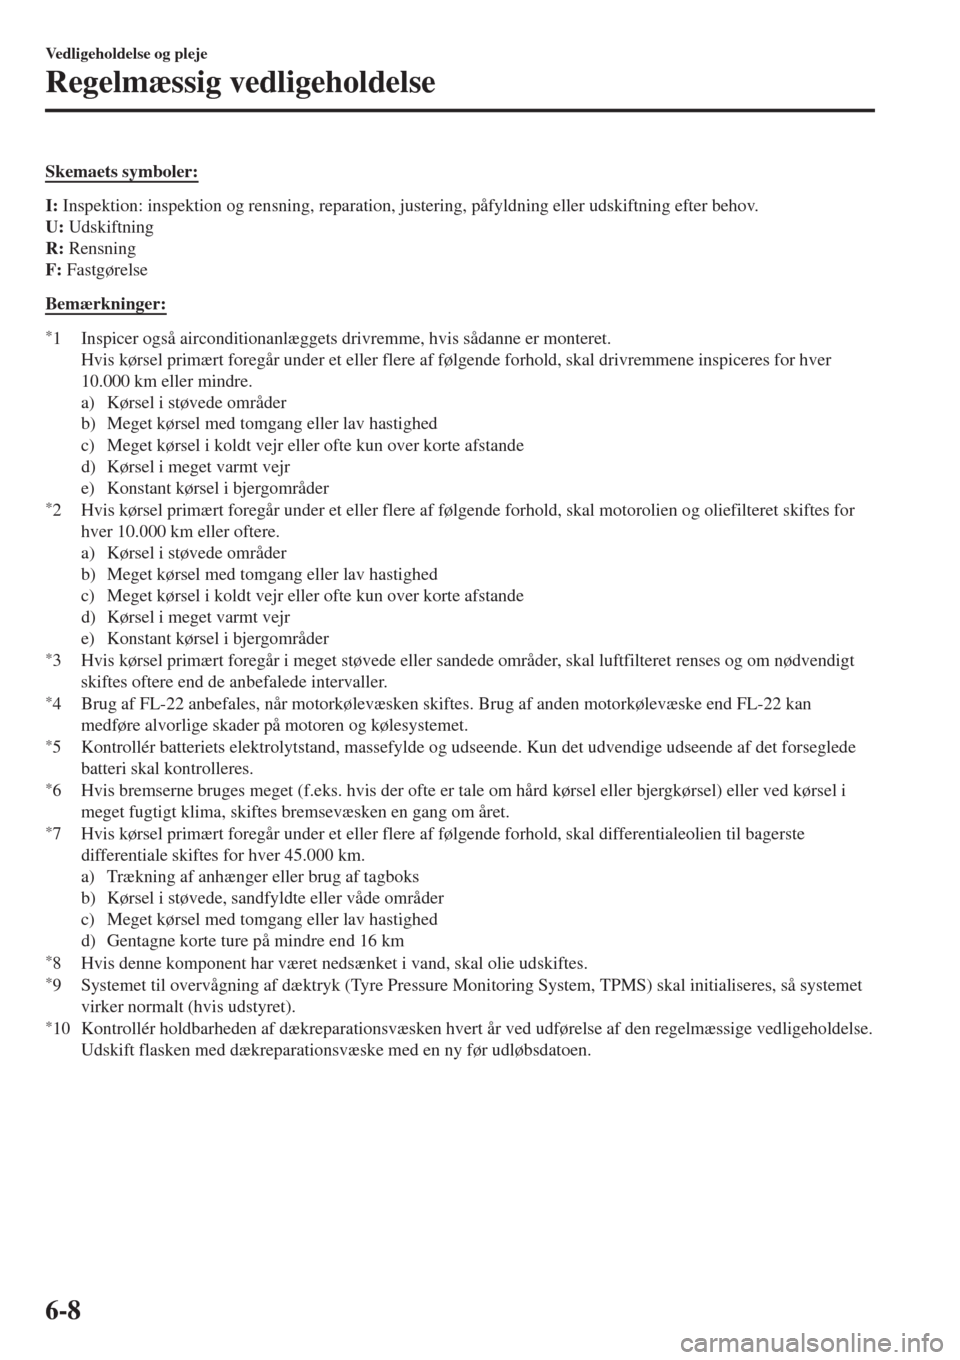 MAZDA MODEL CX-3 2015   Instruktionsbog (in Danish)  Skemaets symboler:
I: Inspektion: inspektion og rensning, reparation, justering, påfyldning eller udskiftning efter behov.
U: Udskiftning
R: Rensning
F: Fastgørelse
Bemærkninger:
*1 Inspicer også 